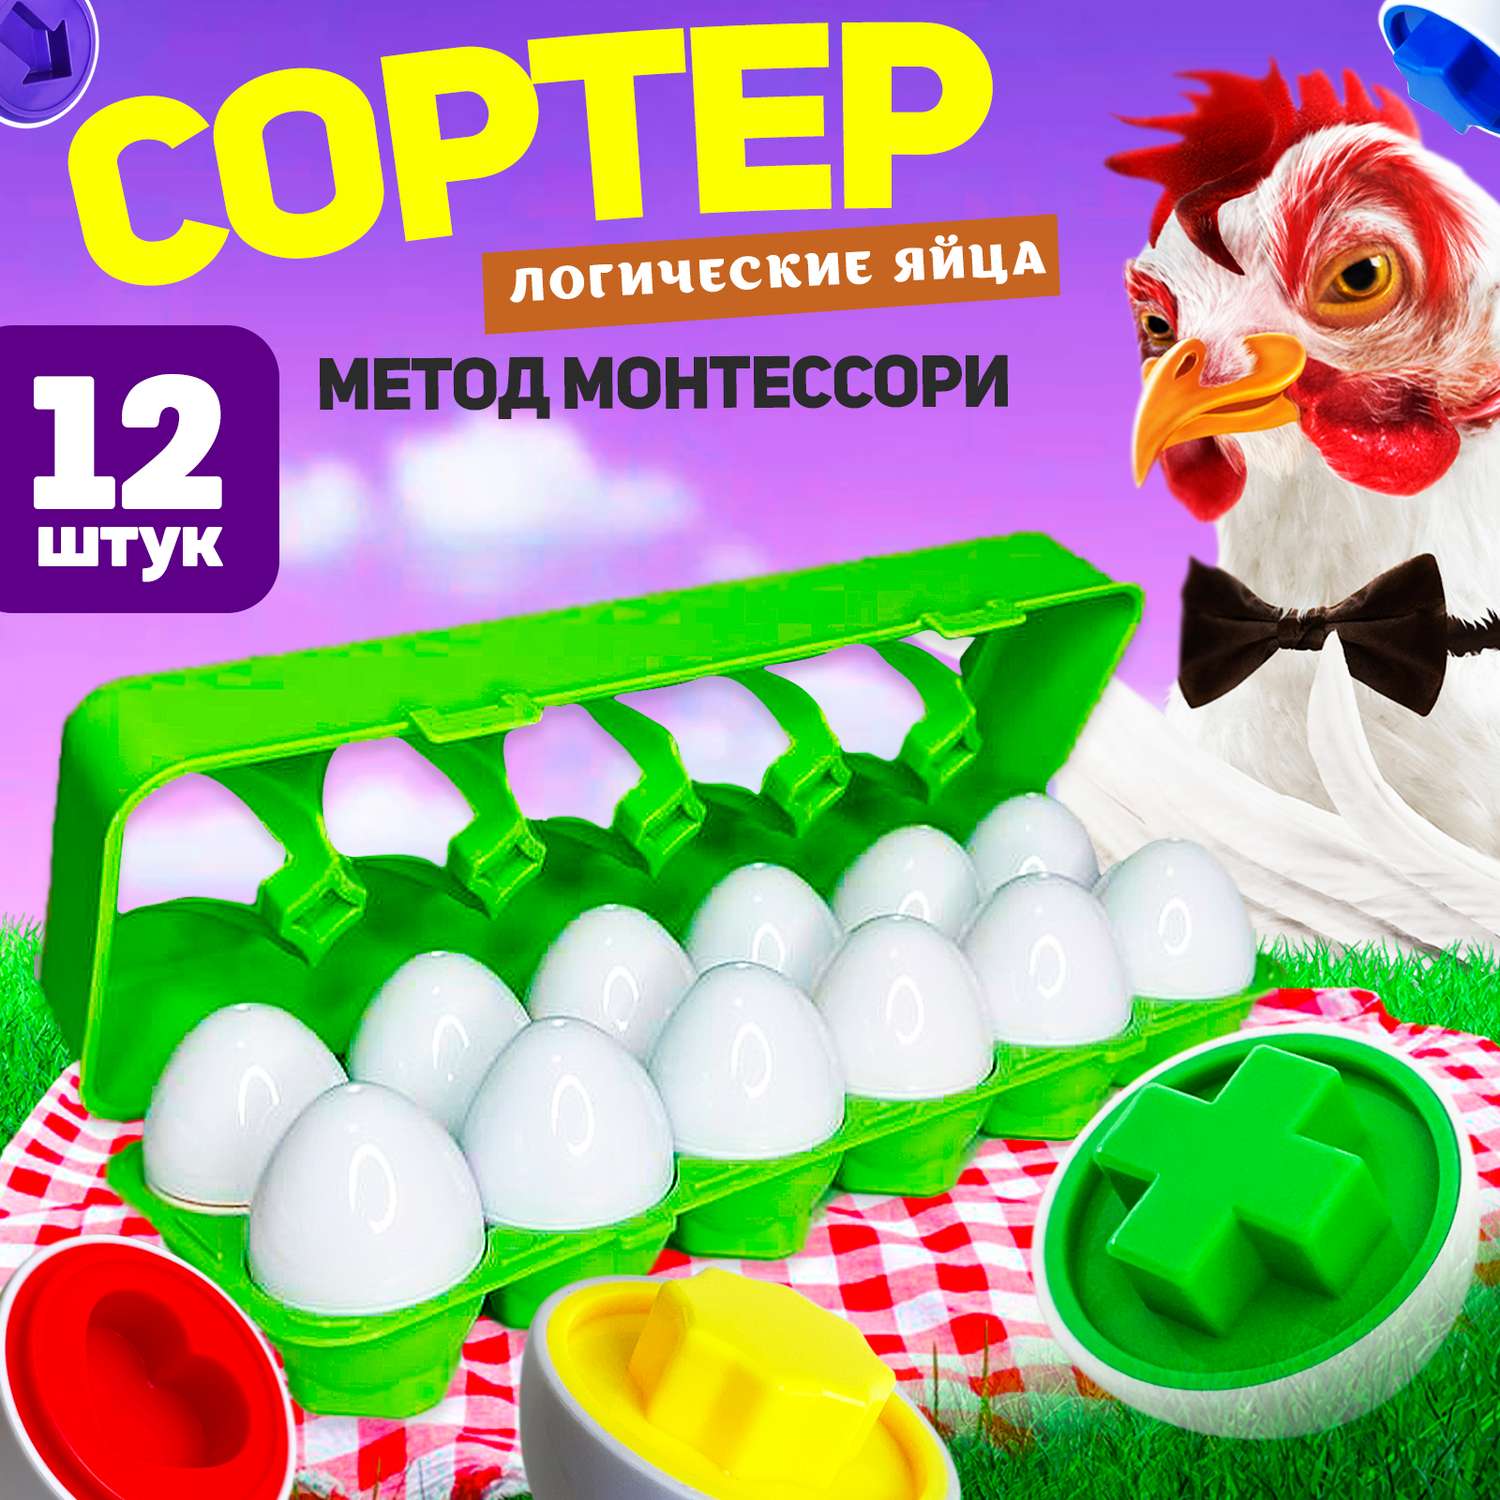 Развивающий сортер для малышей MINI-TOYS Логические яйца 12 шт/ Игрушка для детей по методике Монтессори - фото 1